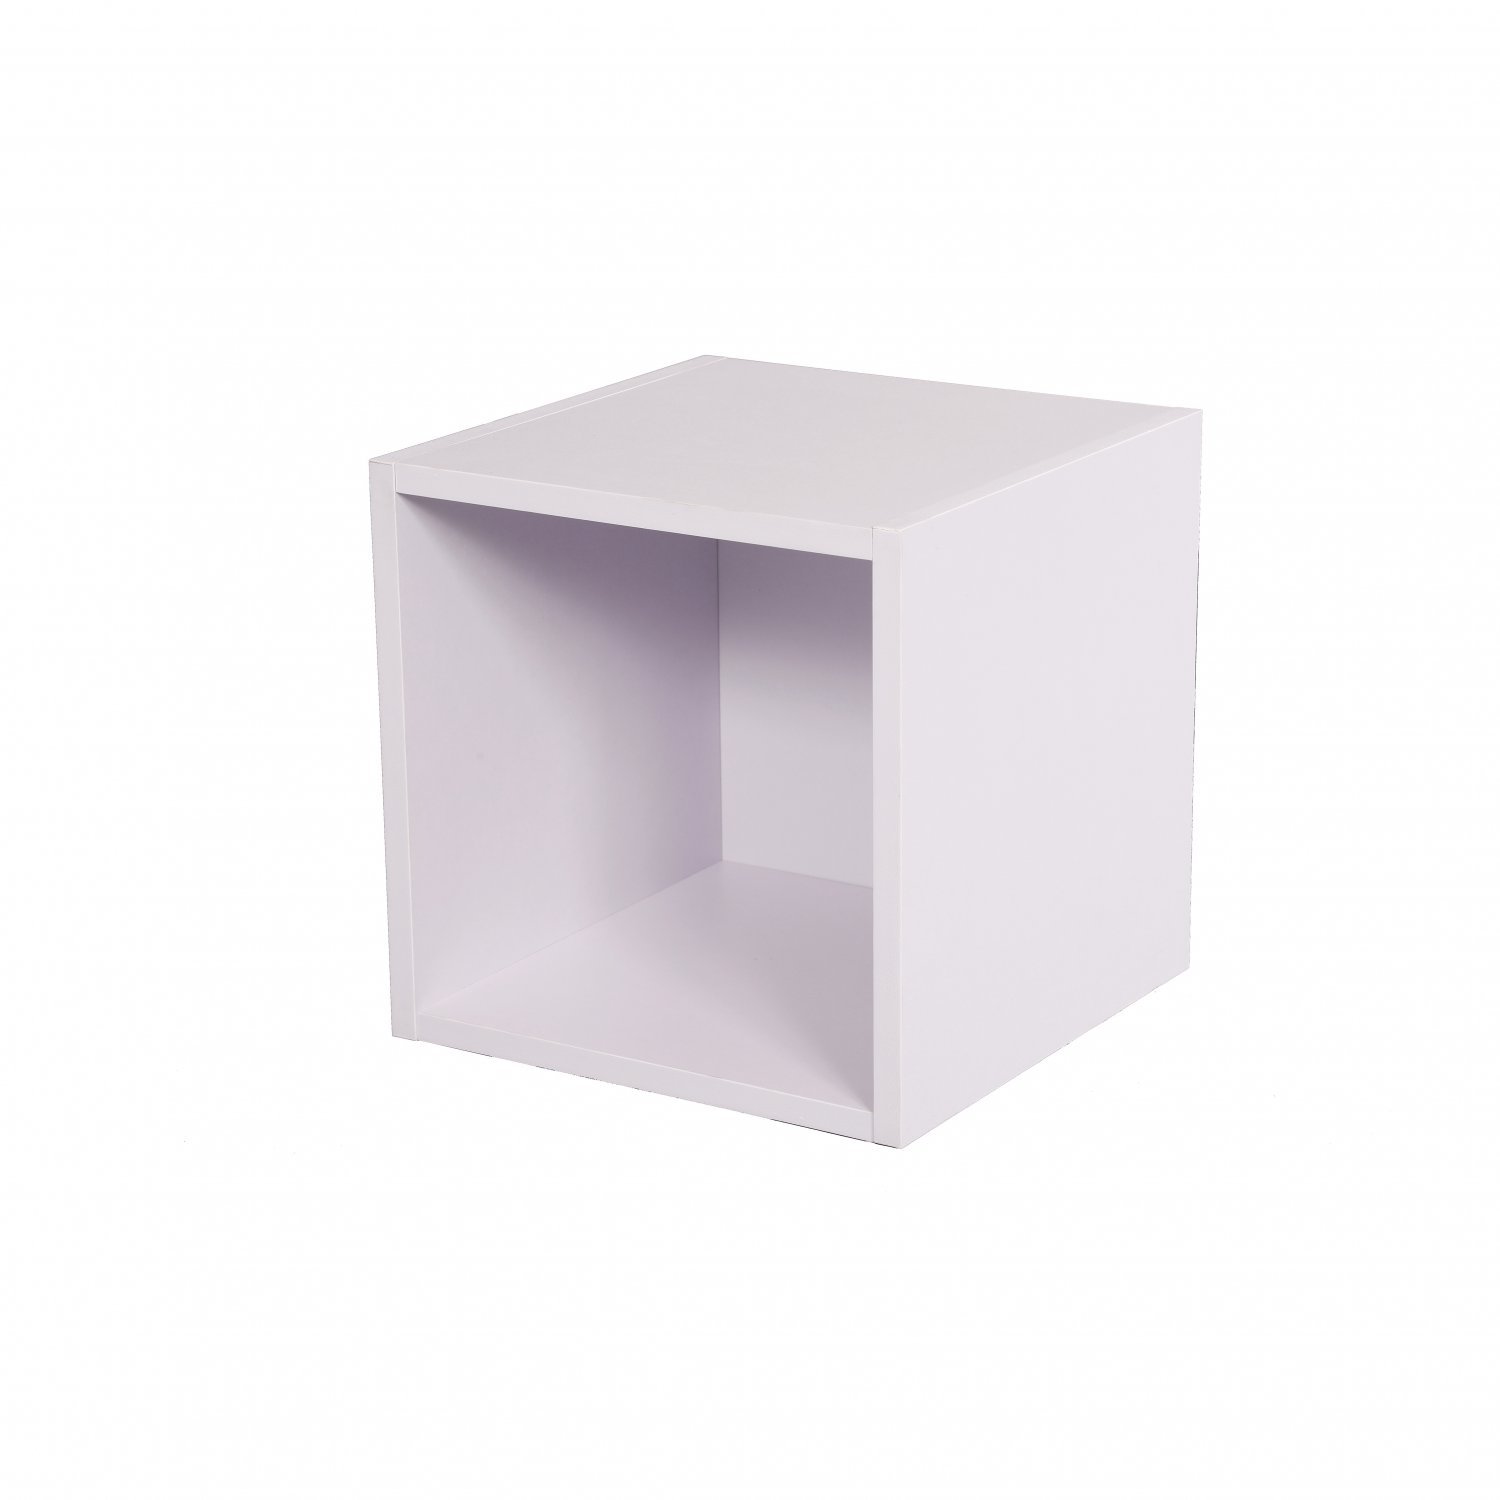 1 Tier White Storage Cube Wooden Shelf, White Storage Bookcase